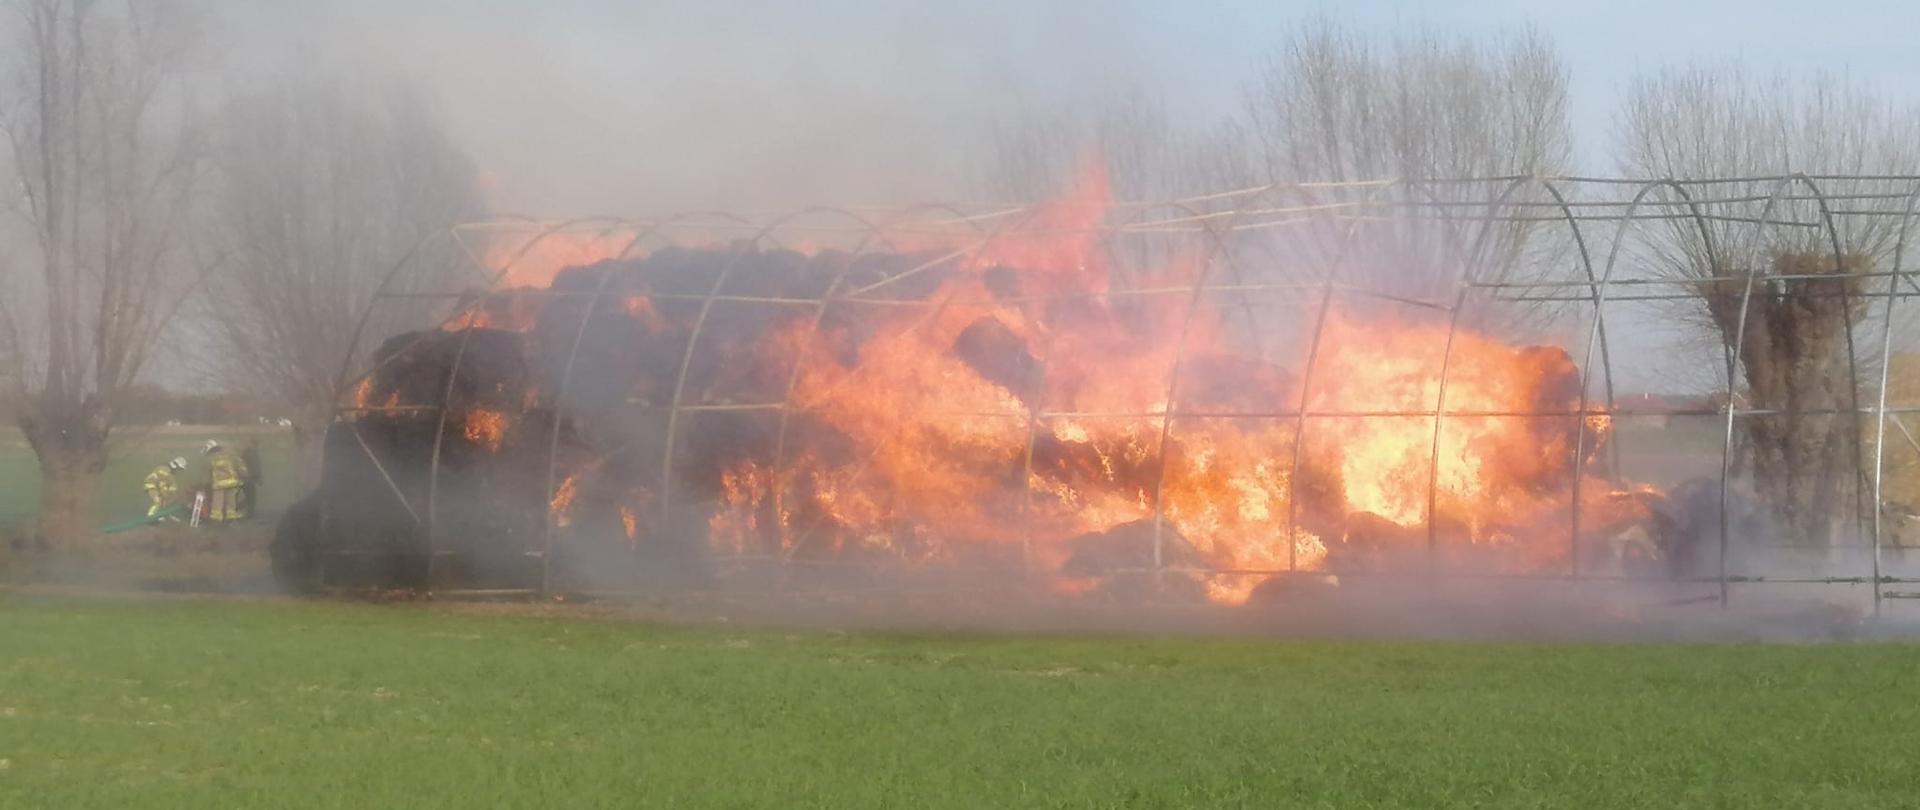 Na zdjęciu widać pożar balotów słomy składowanej pod namiotem brezentowym